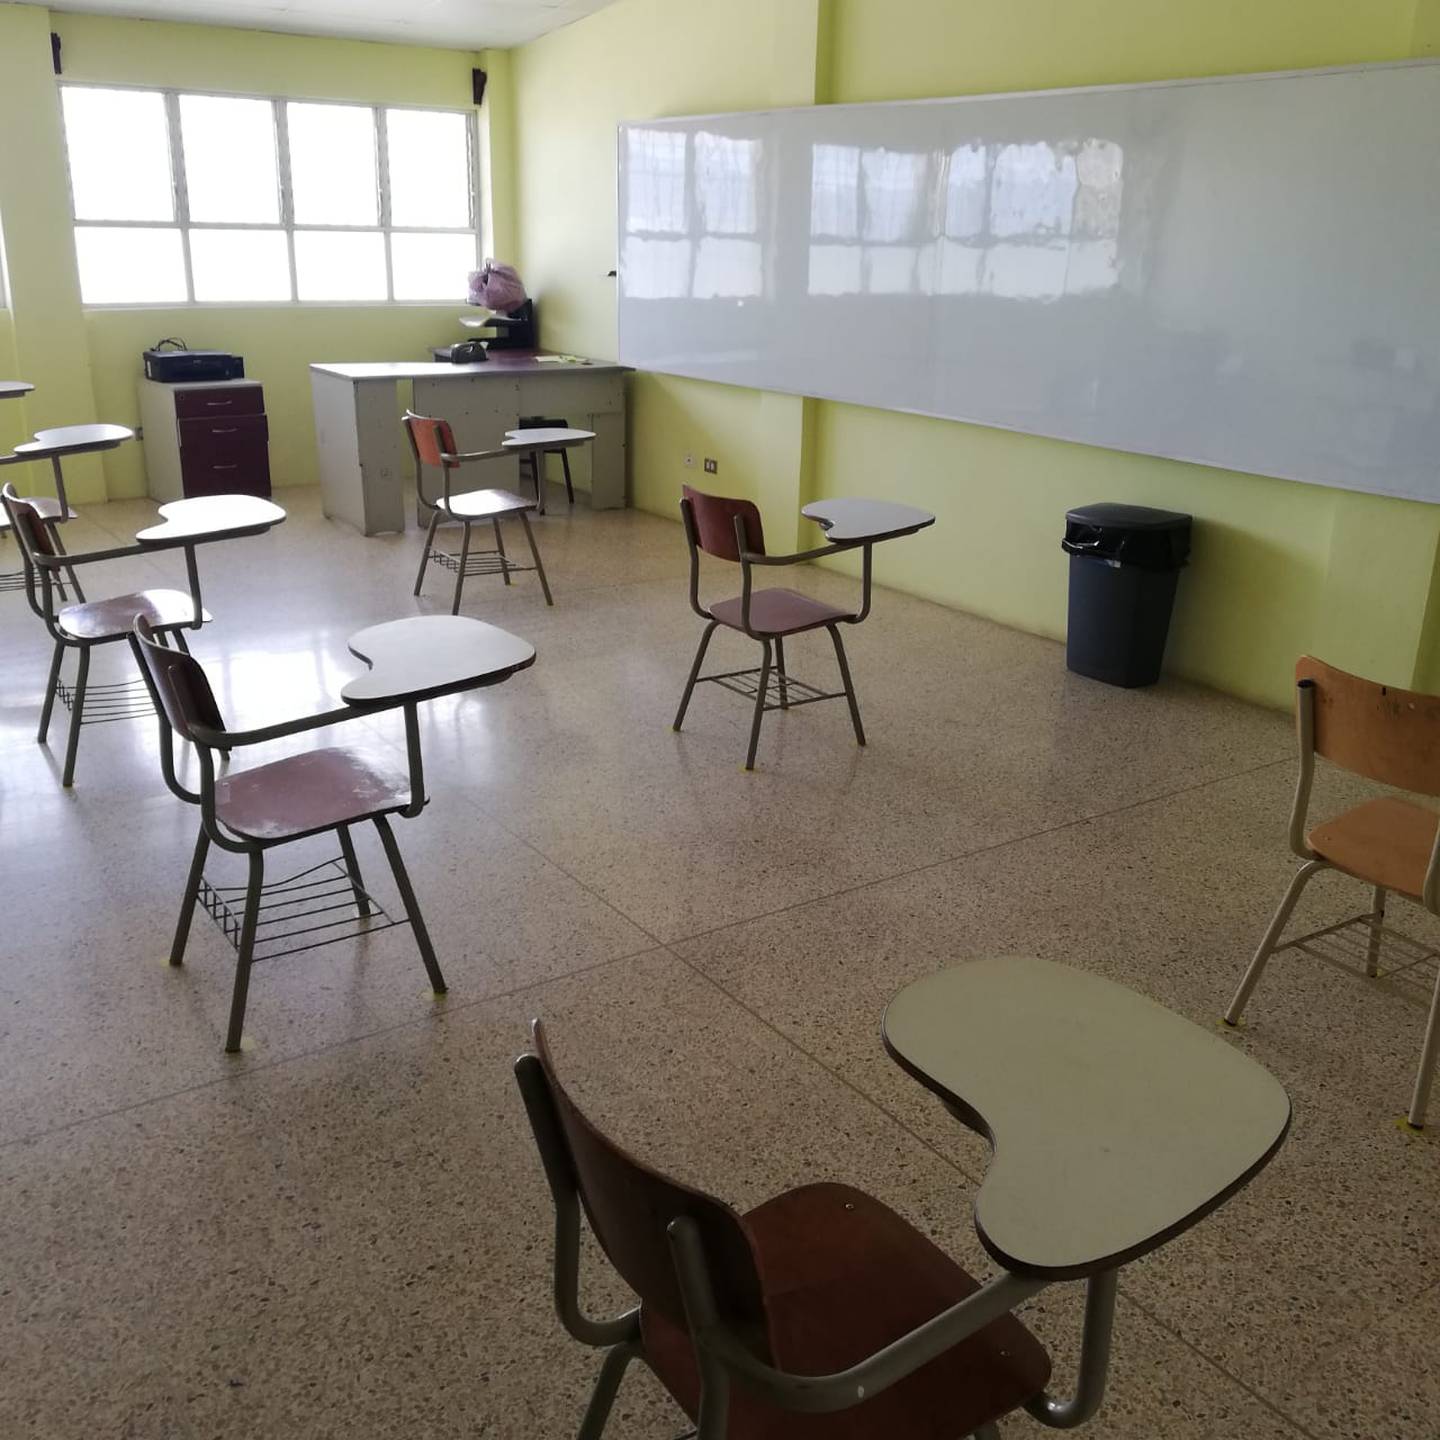 En la escuela Ismael Coto el distanciamiento entre pupitres permite a un máximo de 10 alumnos por aula